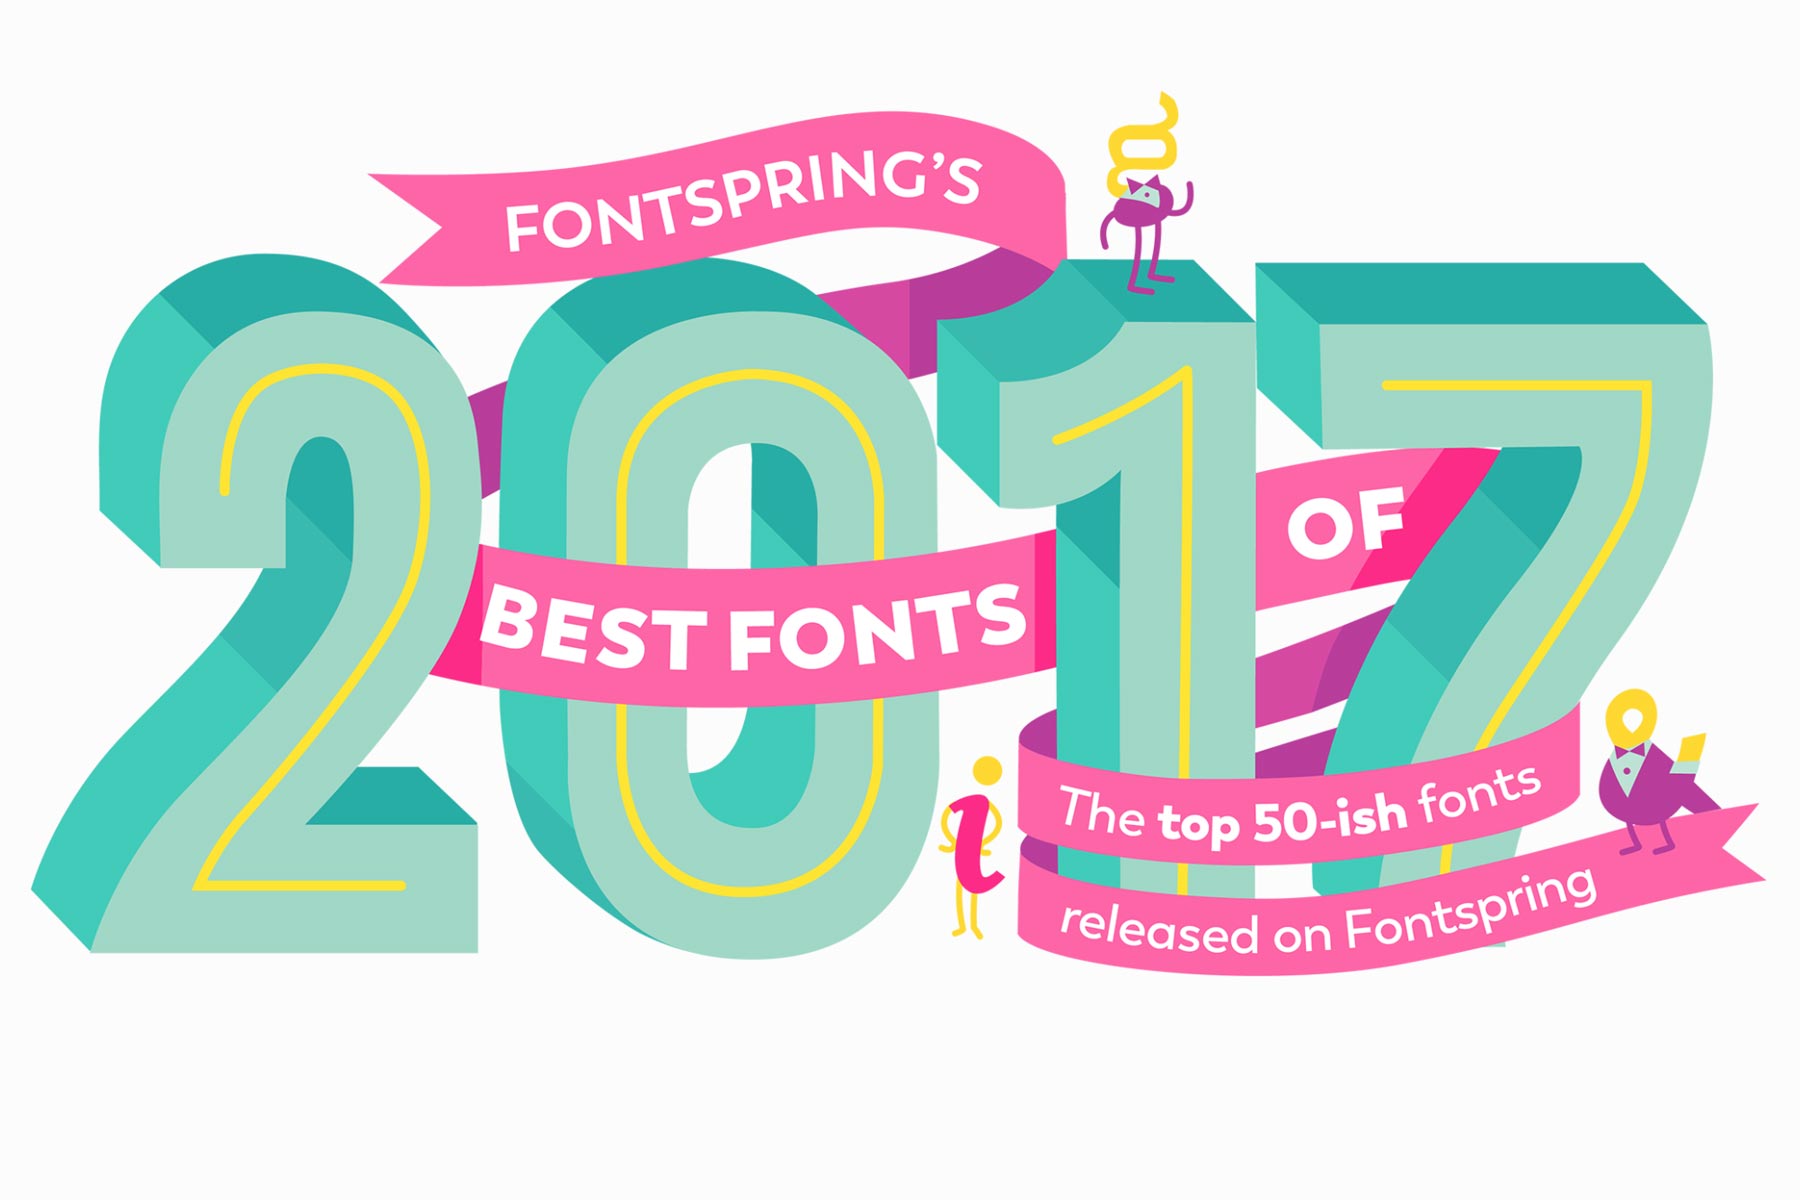 Fontspring – Best of 2017